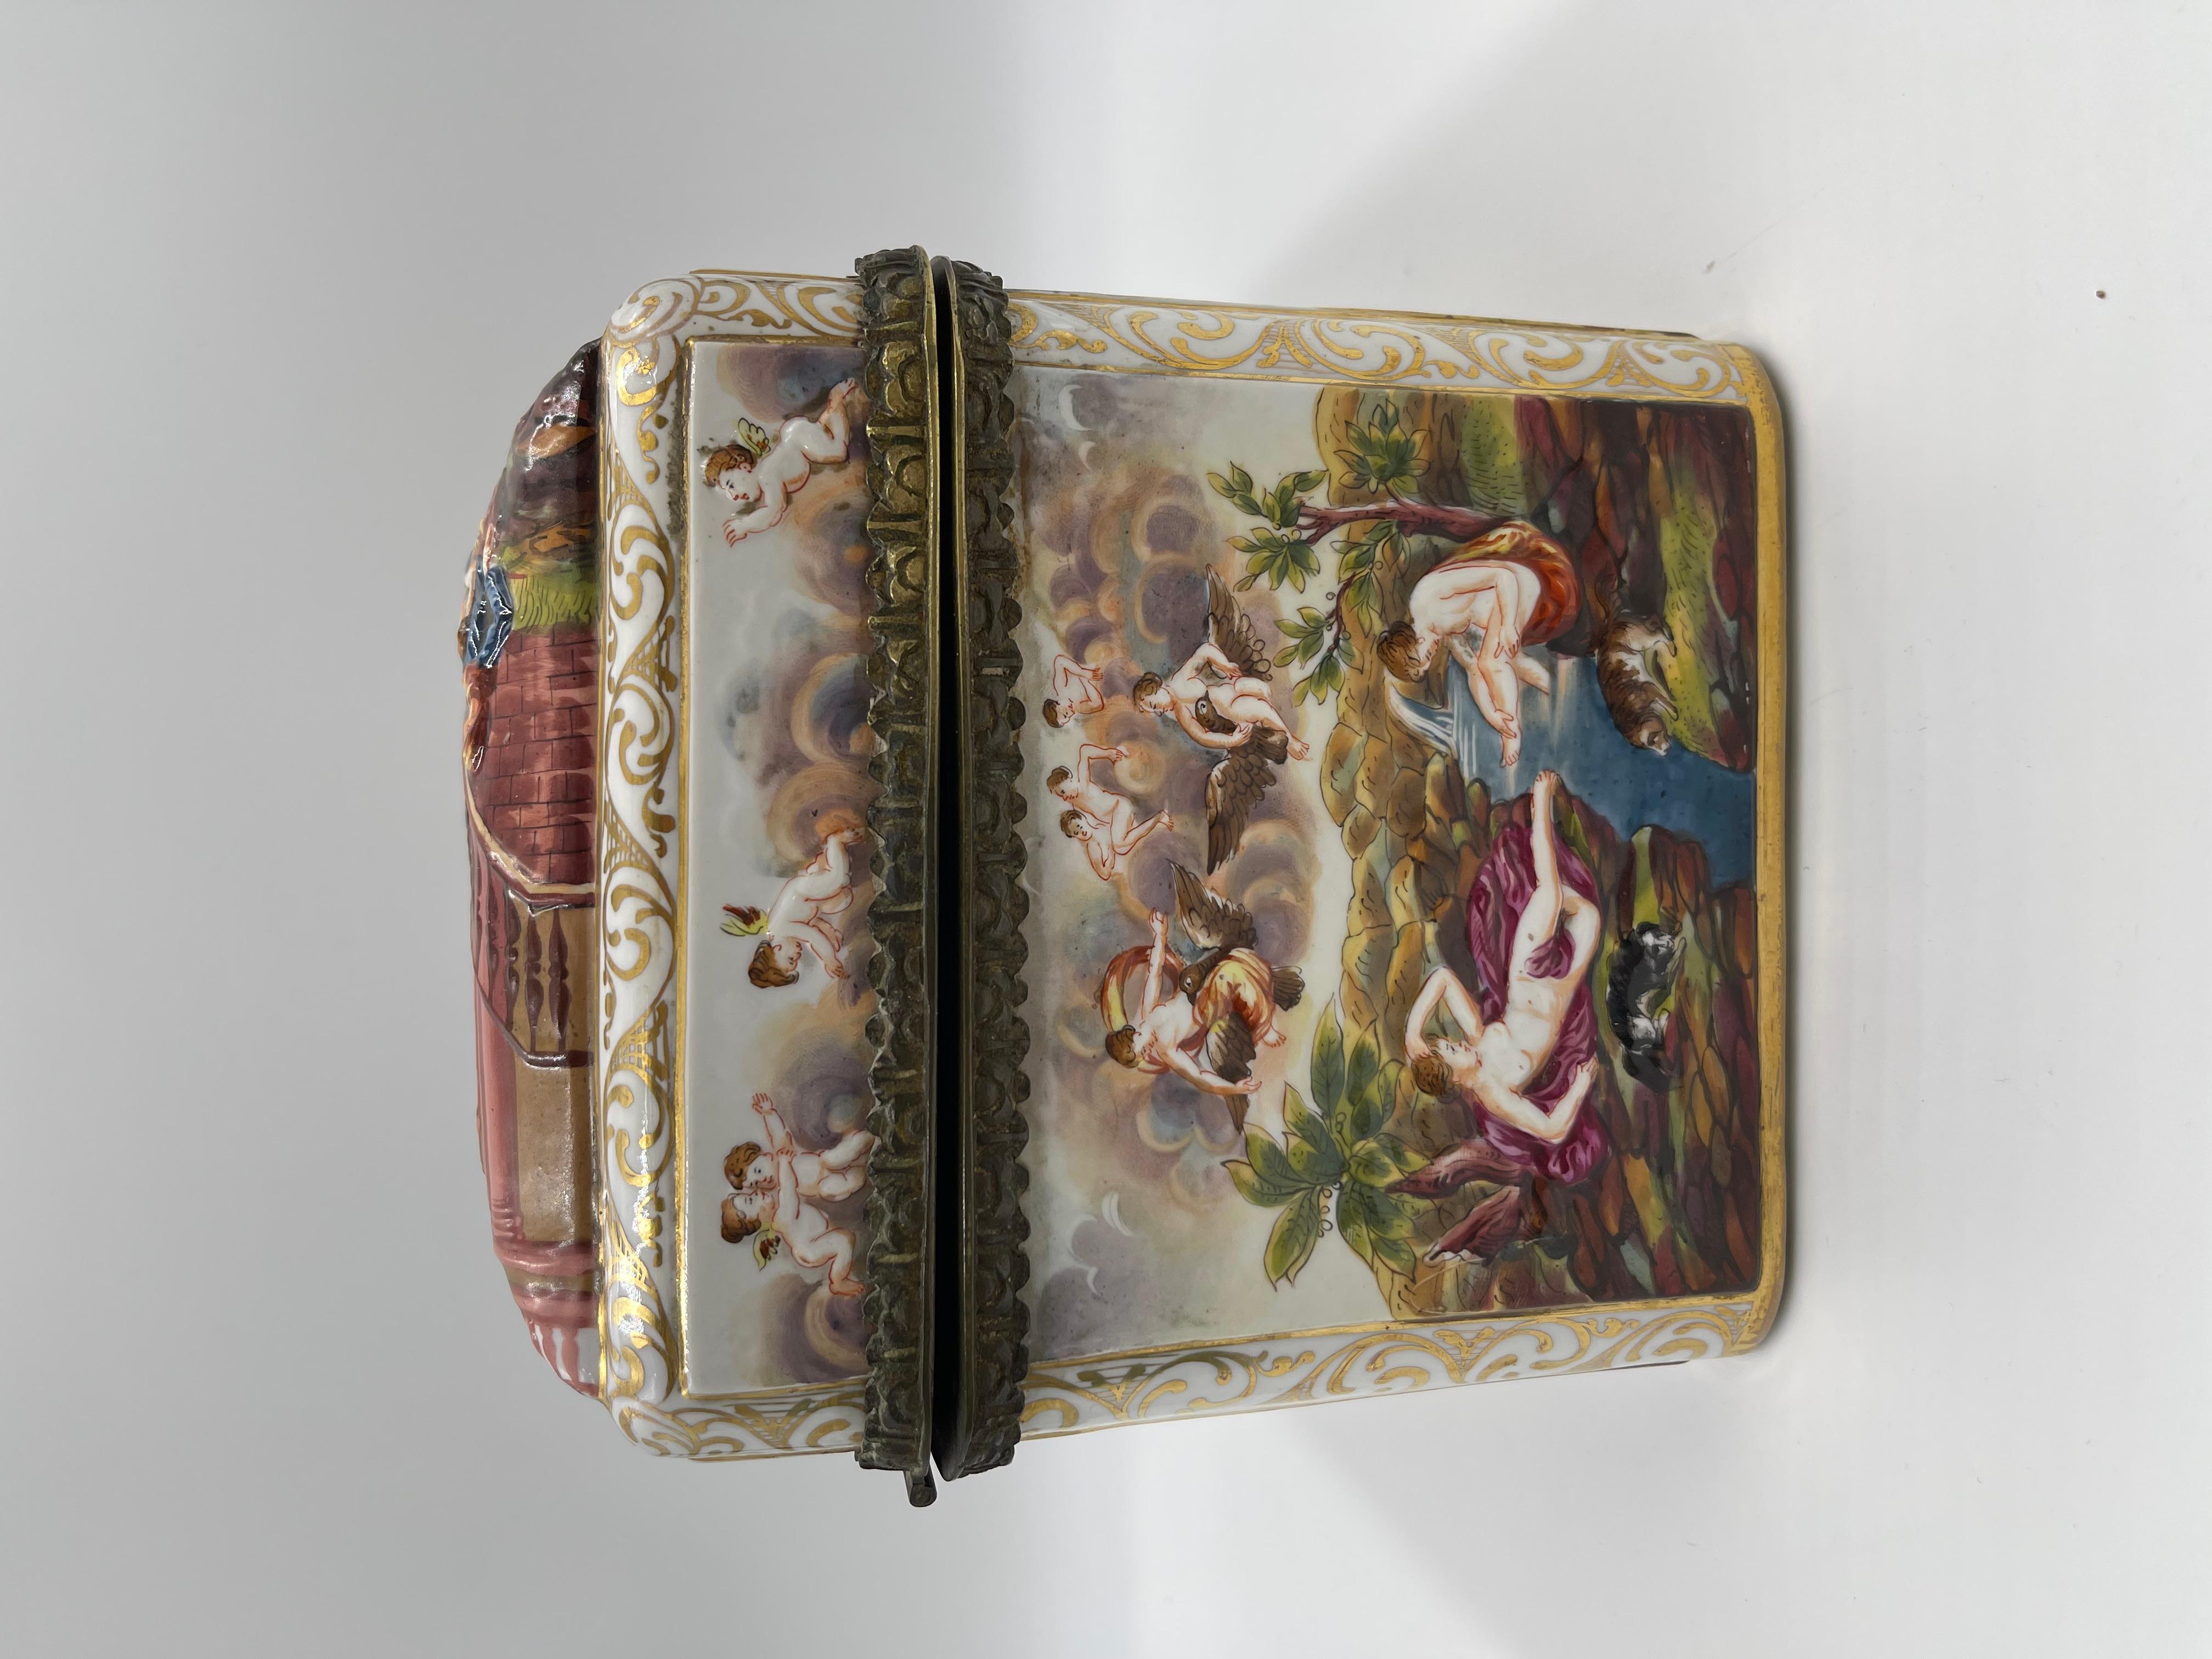 Rare Large 19th C. Capodimonte Porcelain Box / Table Casket For Sale 3